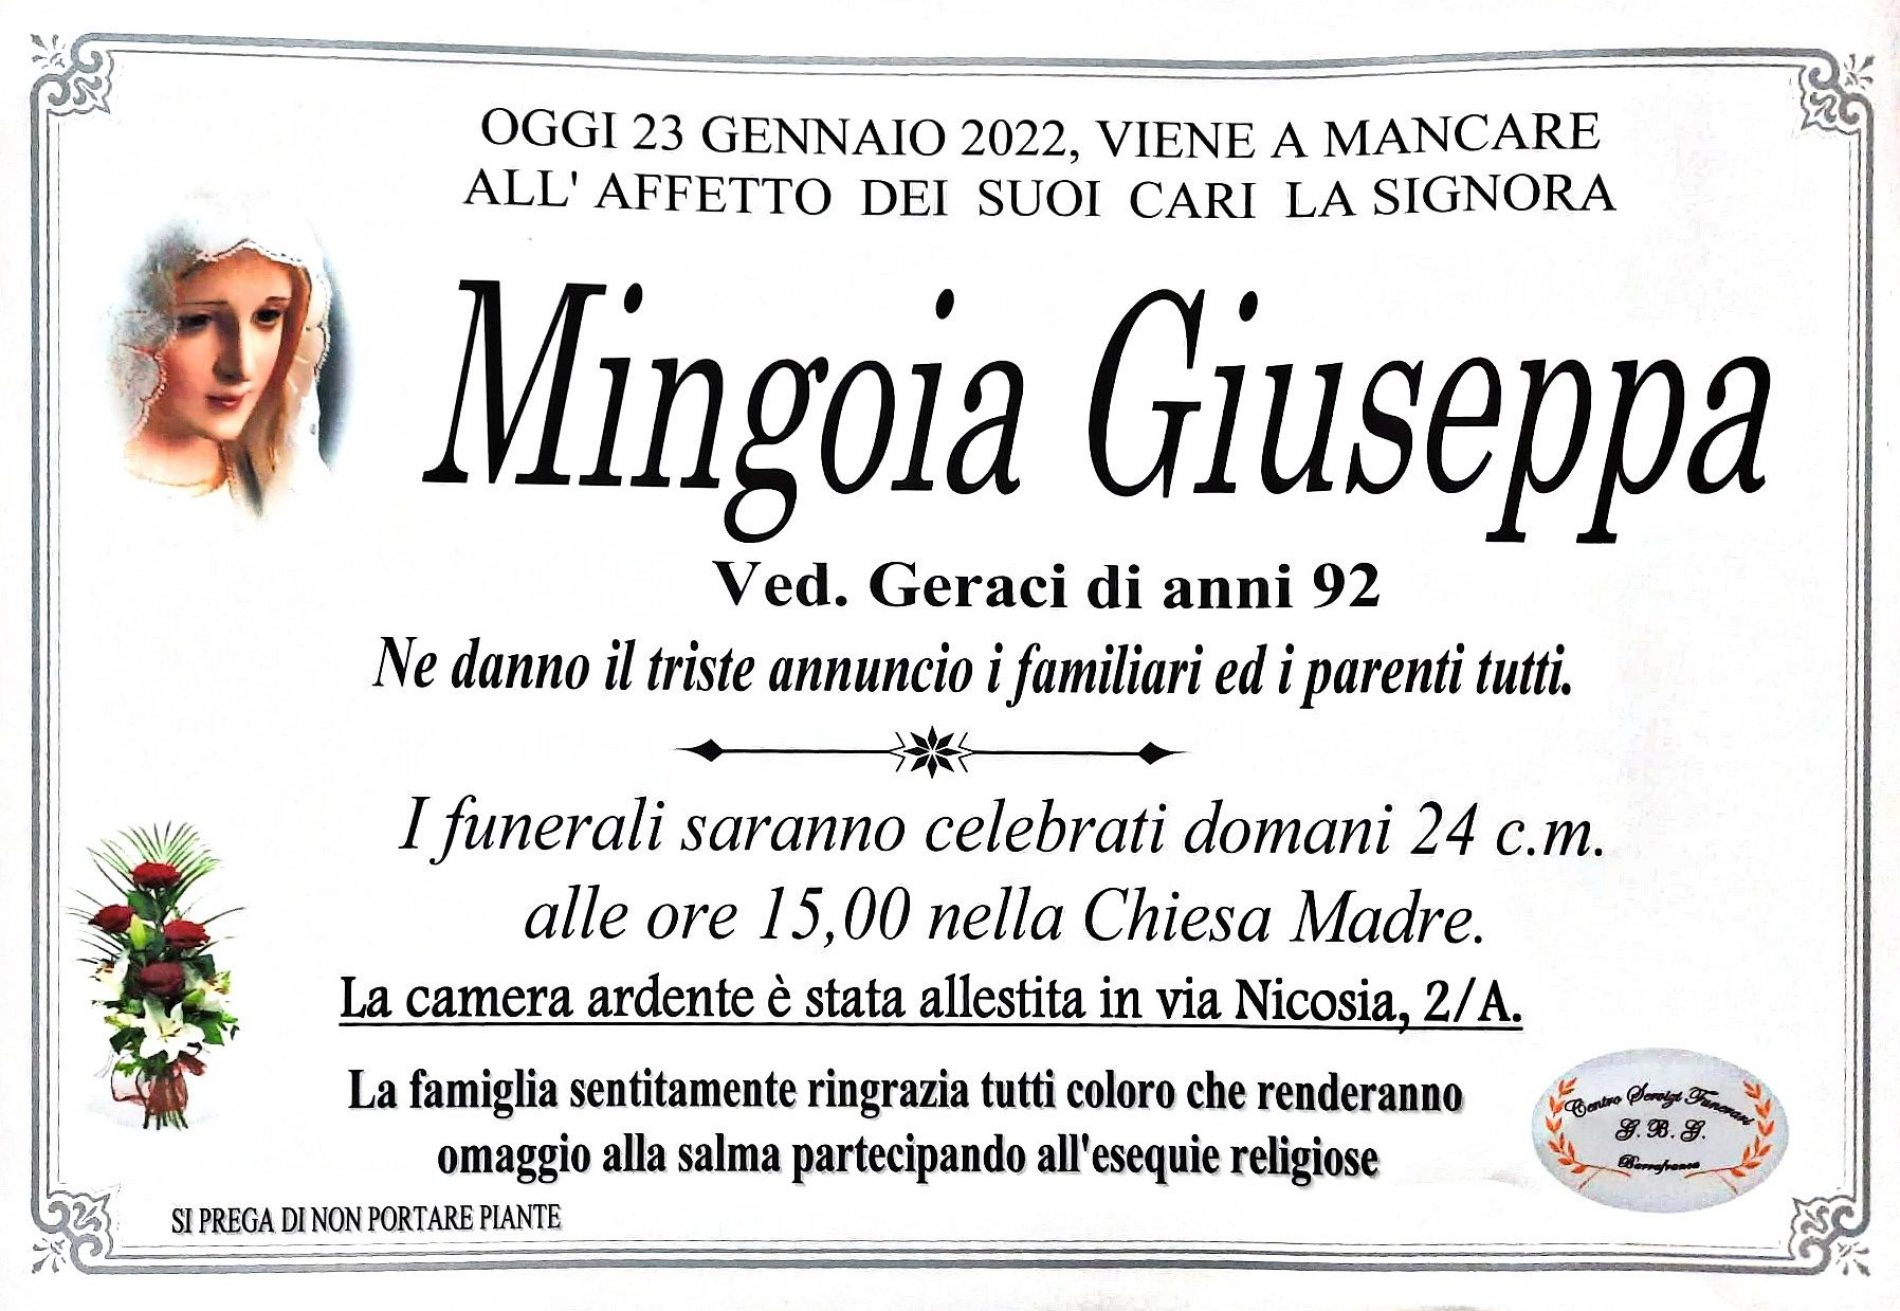 Annuncio servizi funerari agenzia G.B.G. sig.ra Mingoia Giuseppa ved. Geraci di anni 92